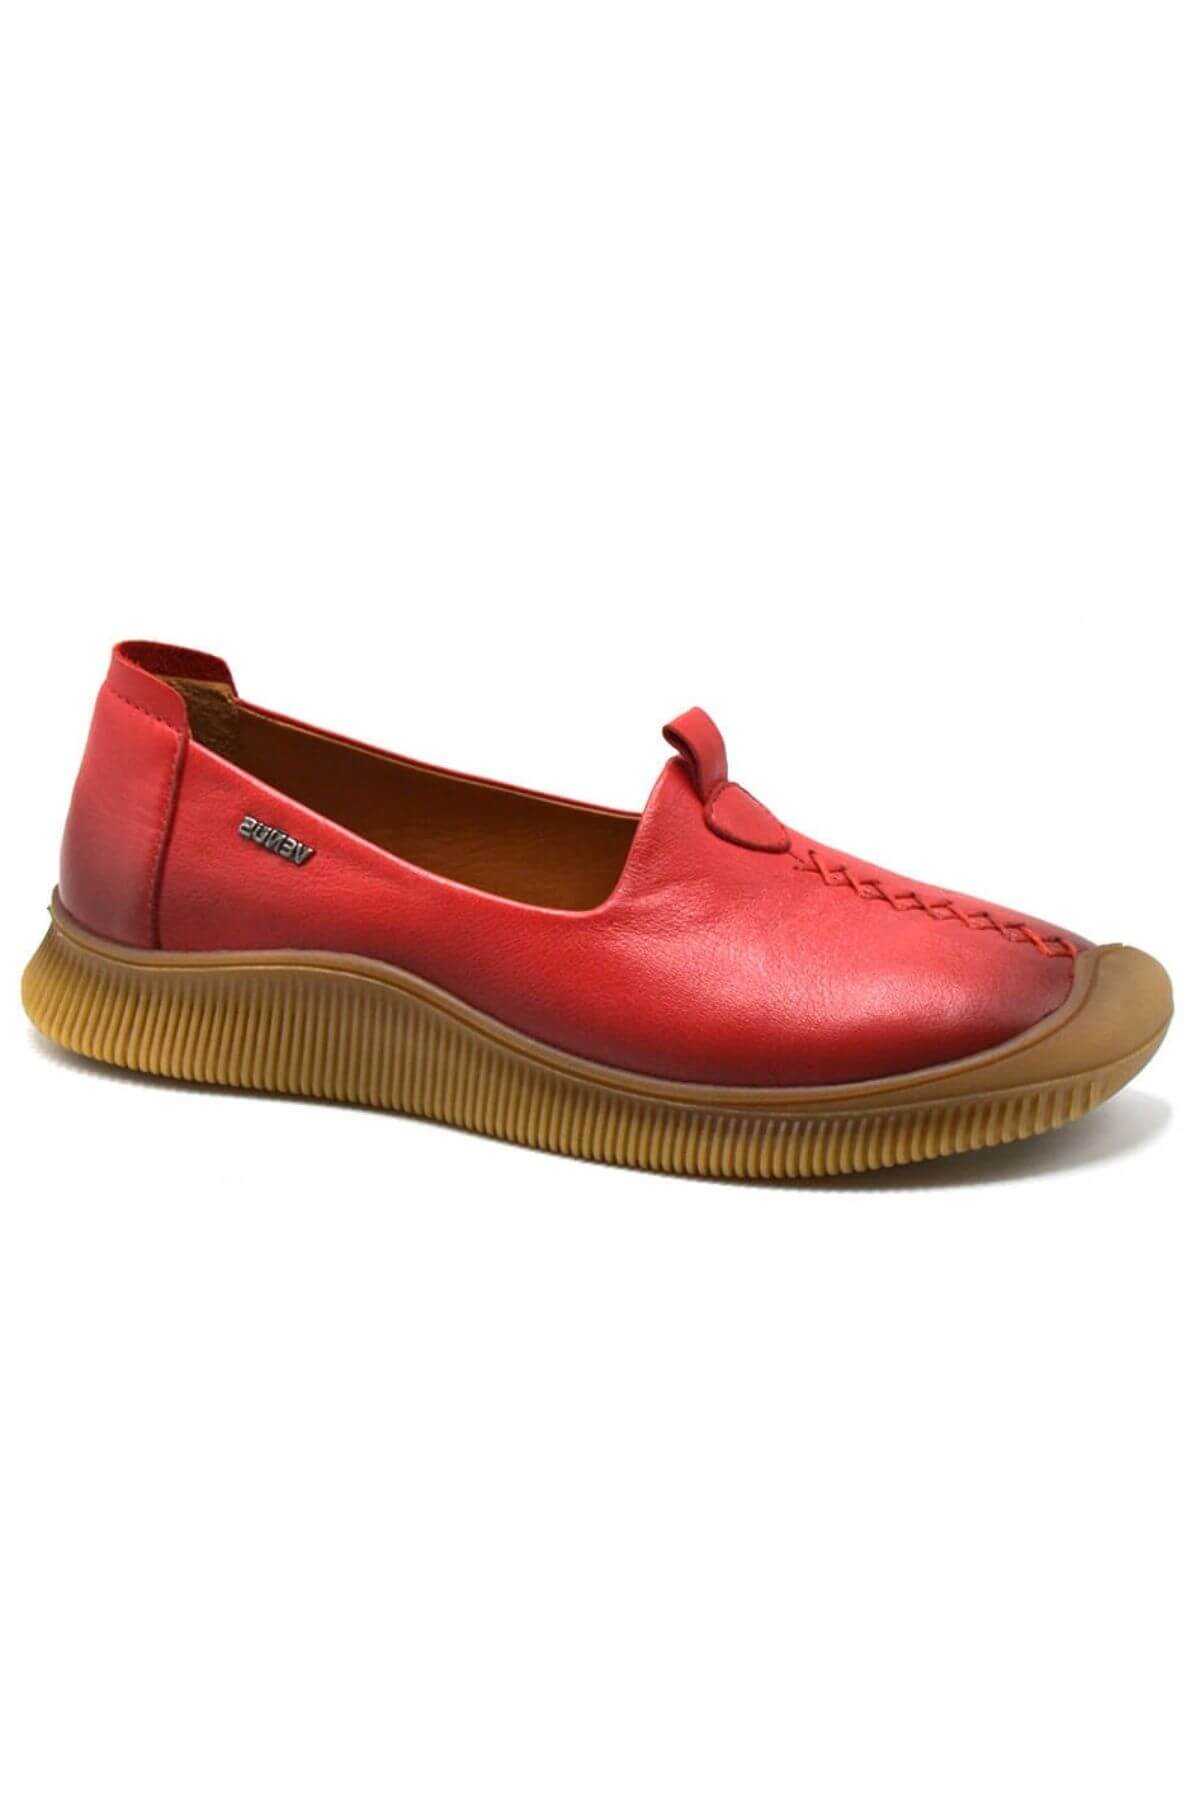 Kadın Comfort Deri Ayakkabı Kırmızı 2413503Y - Thumbnail